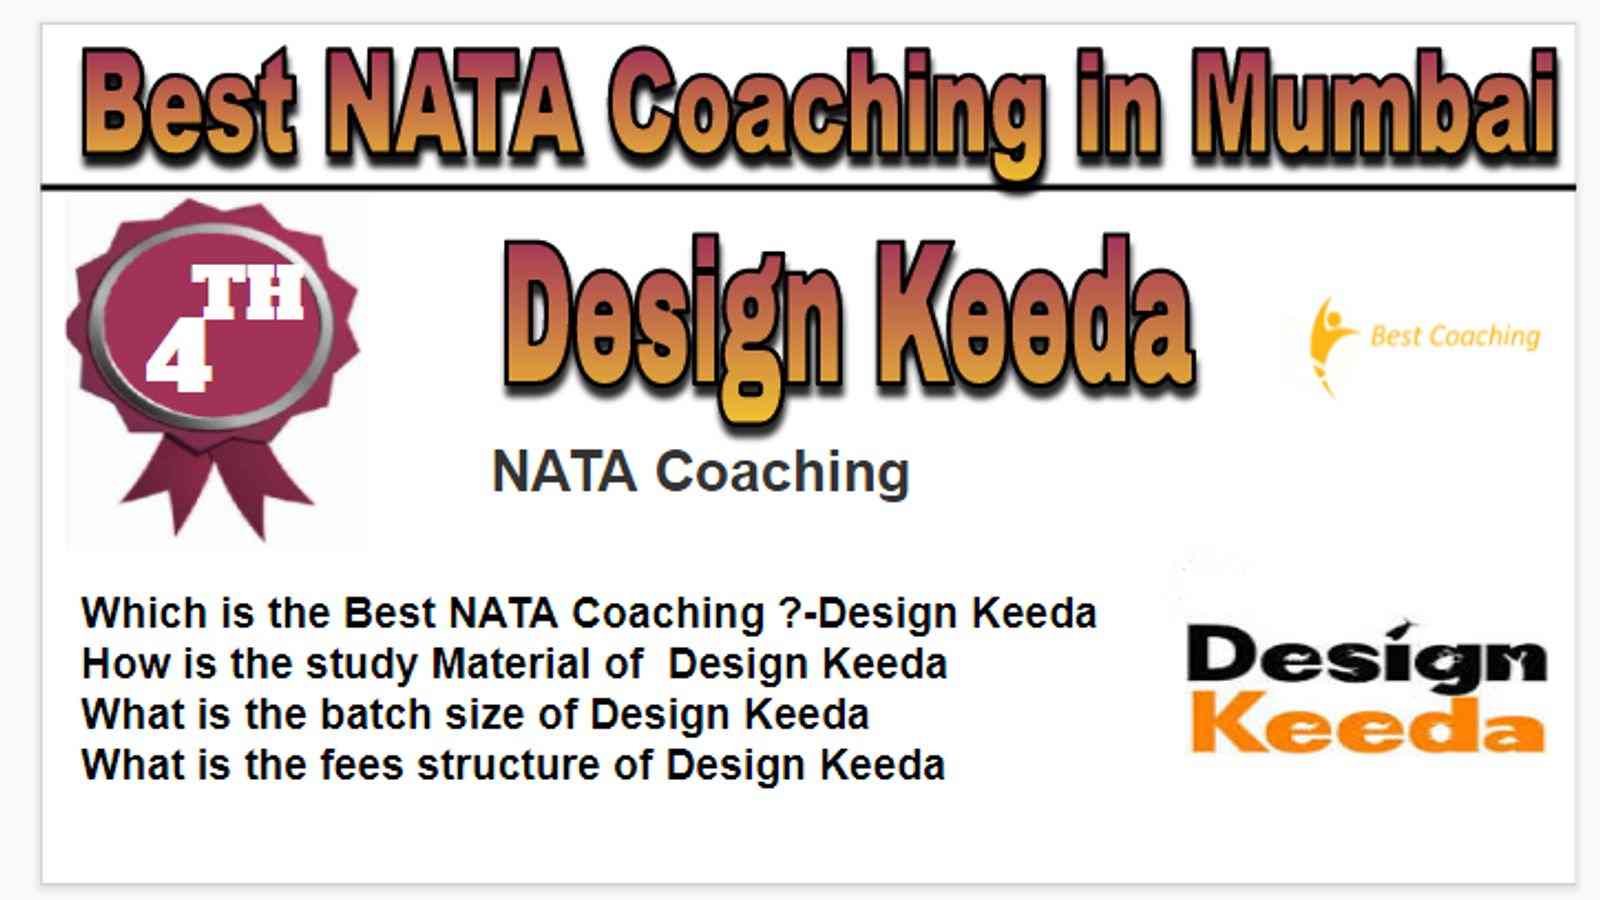 Rank 4 best NATA coaching in Mumbai